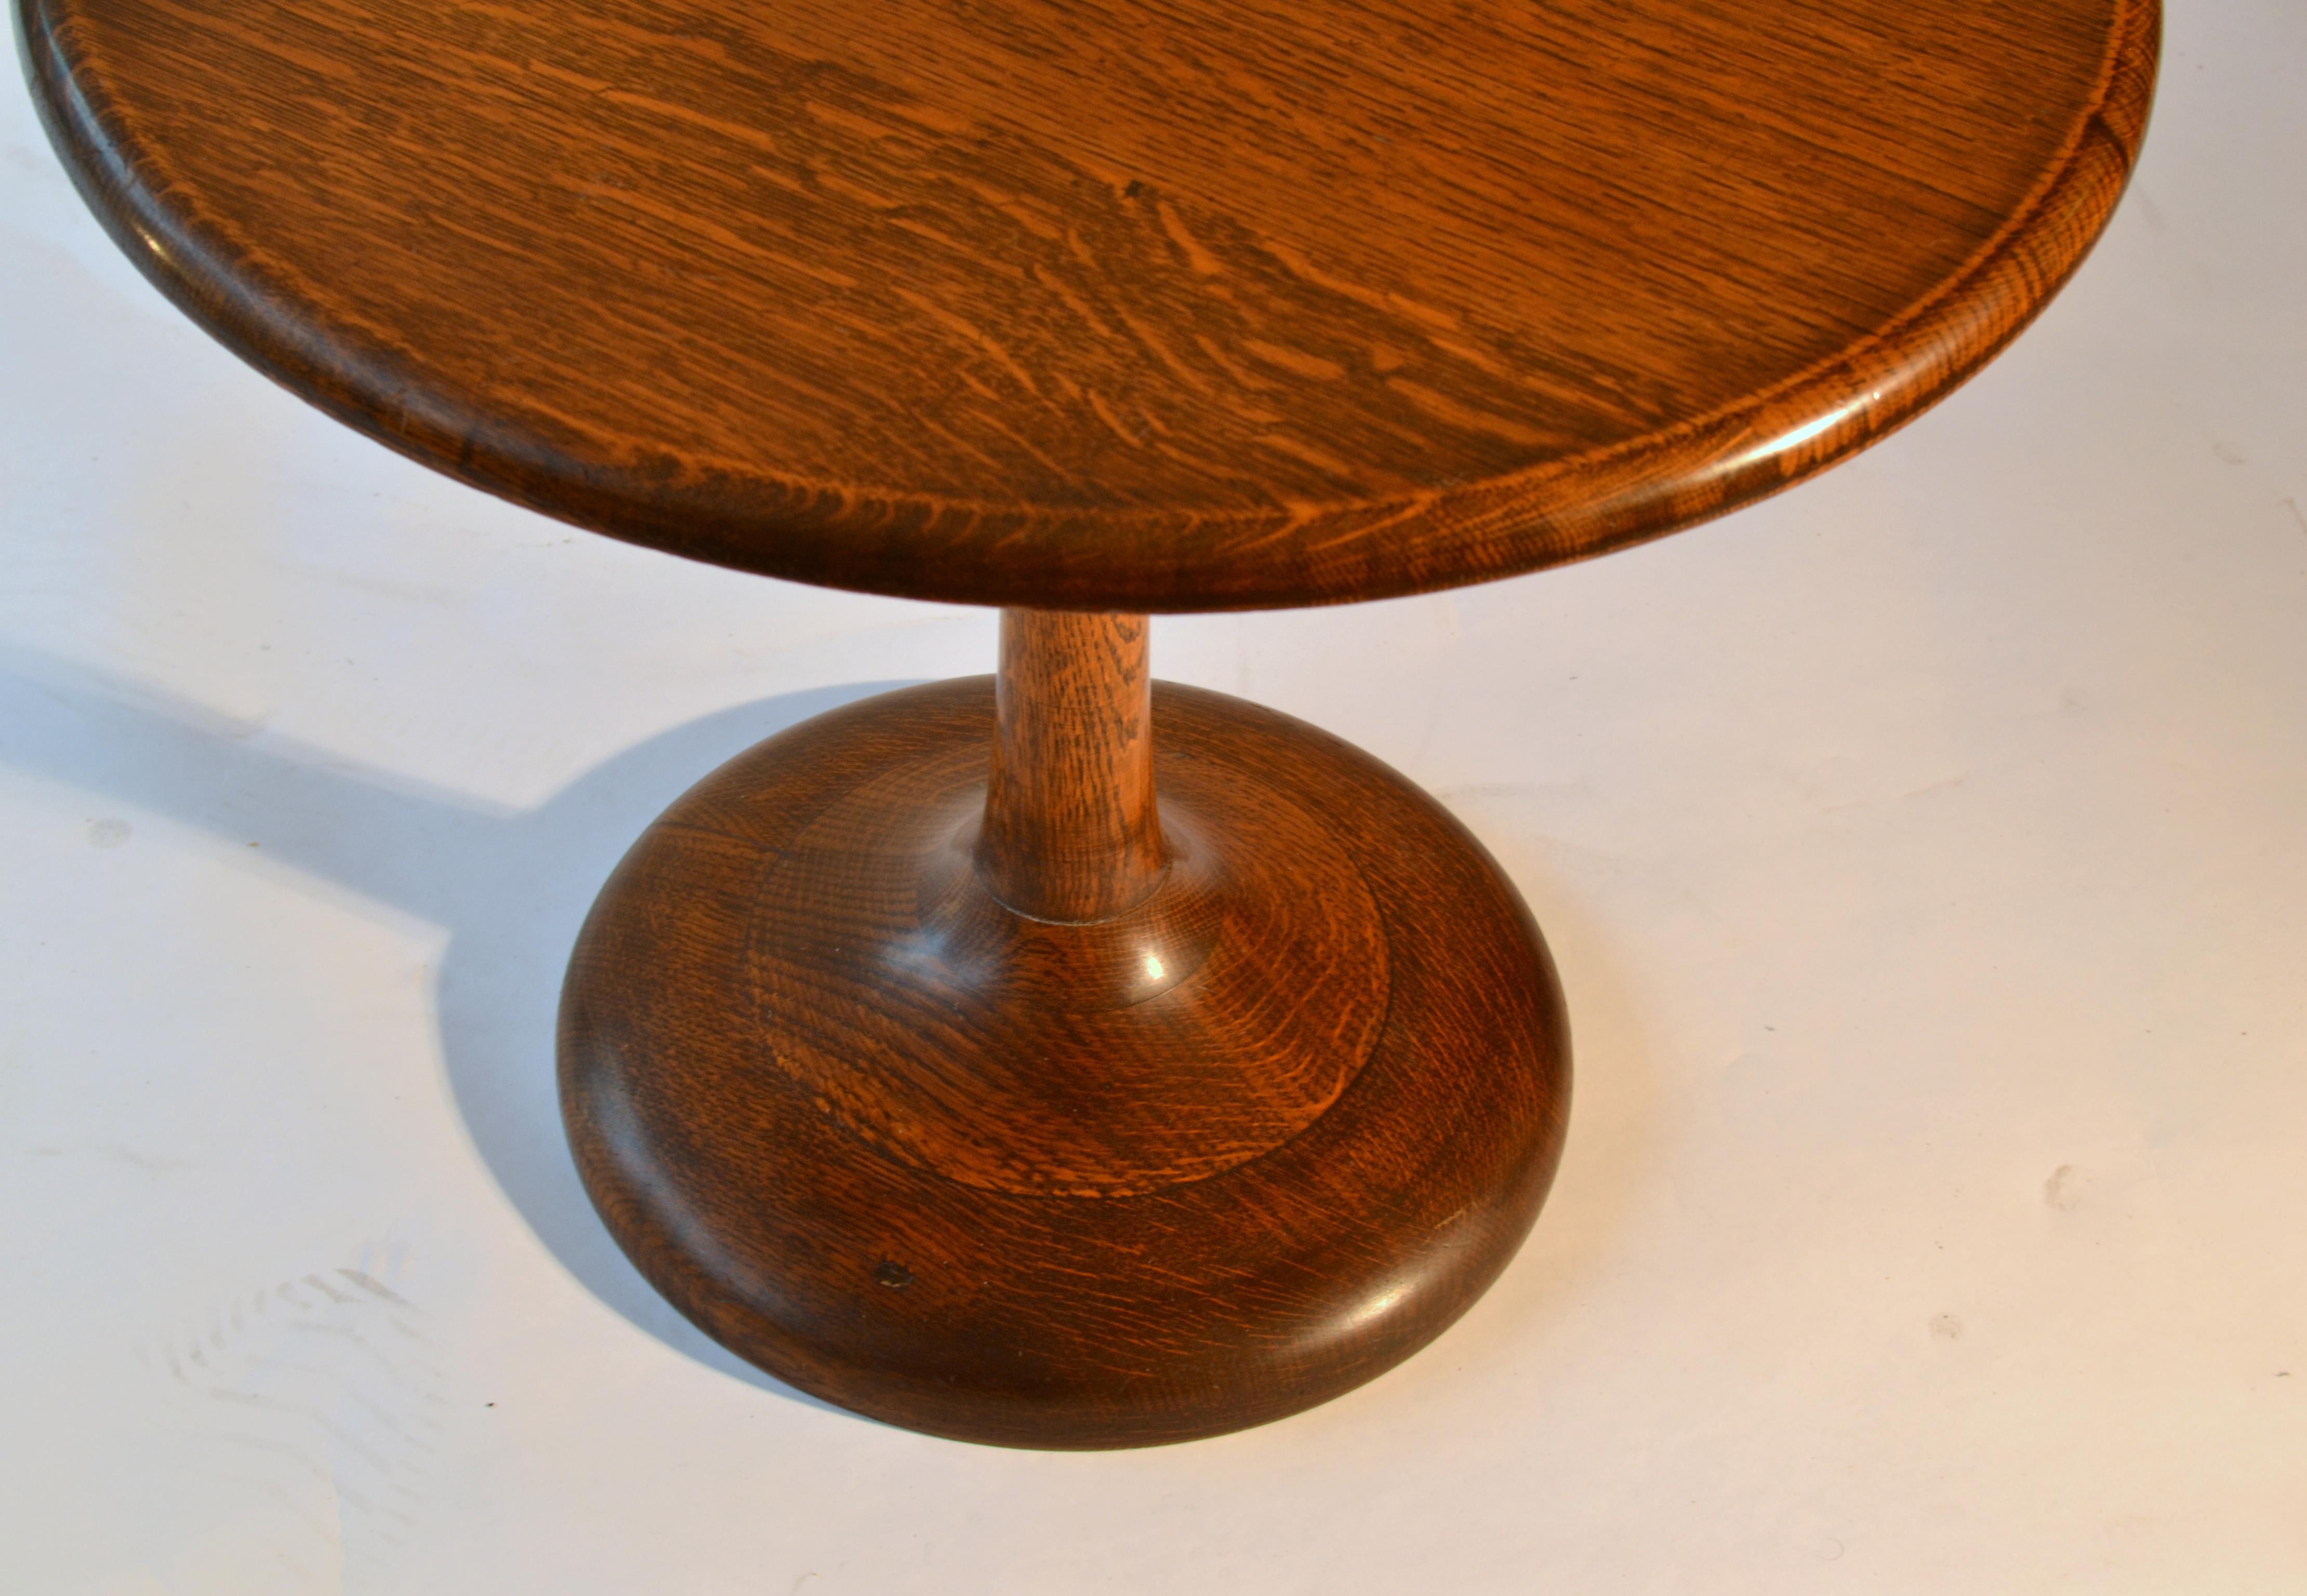 Turned Mid-Century Modern Round Oak Side Table on Tulip Foot